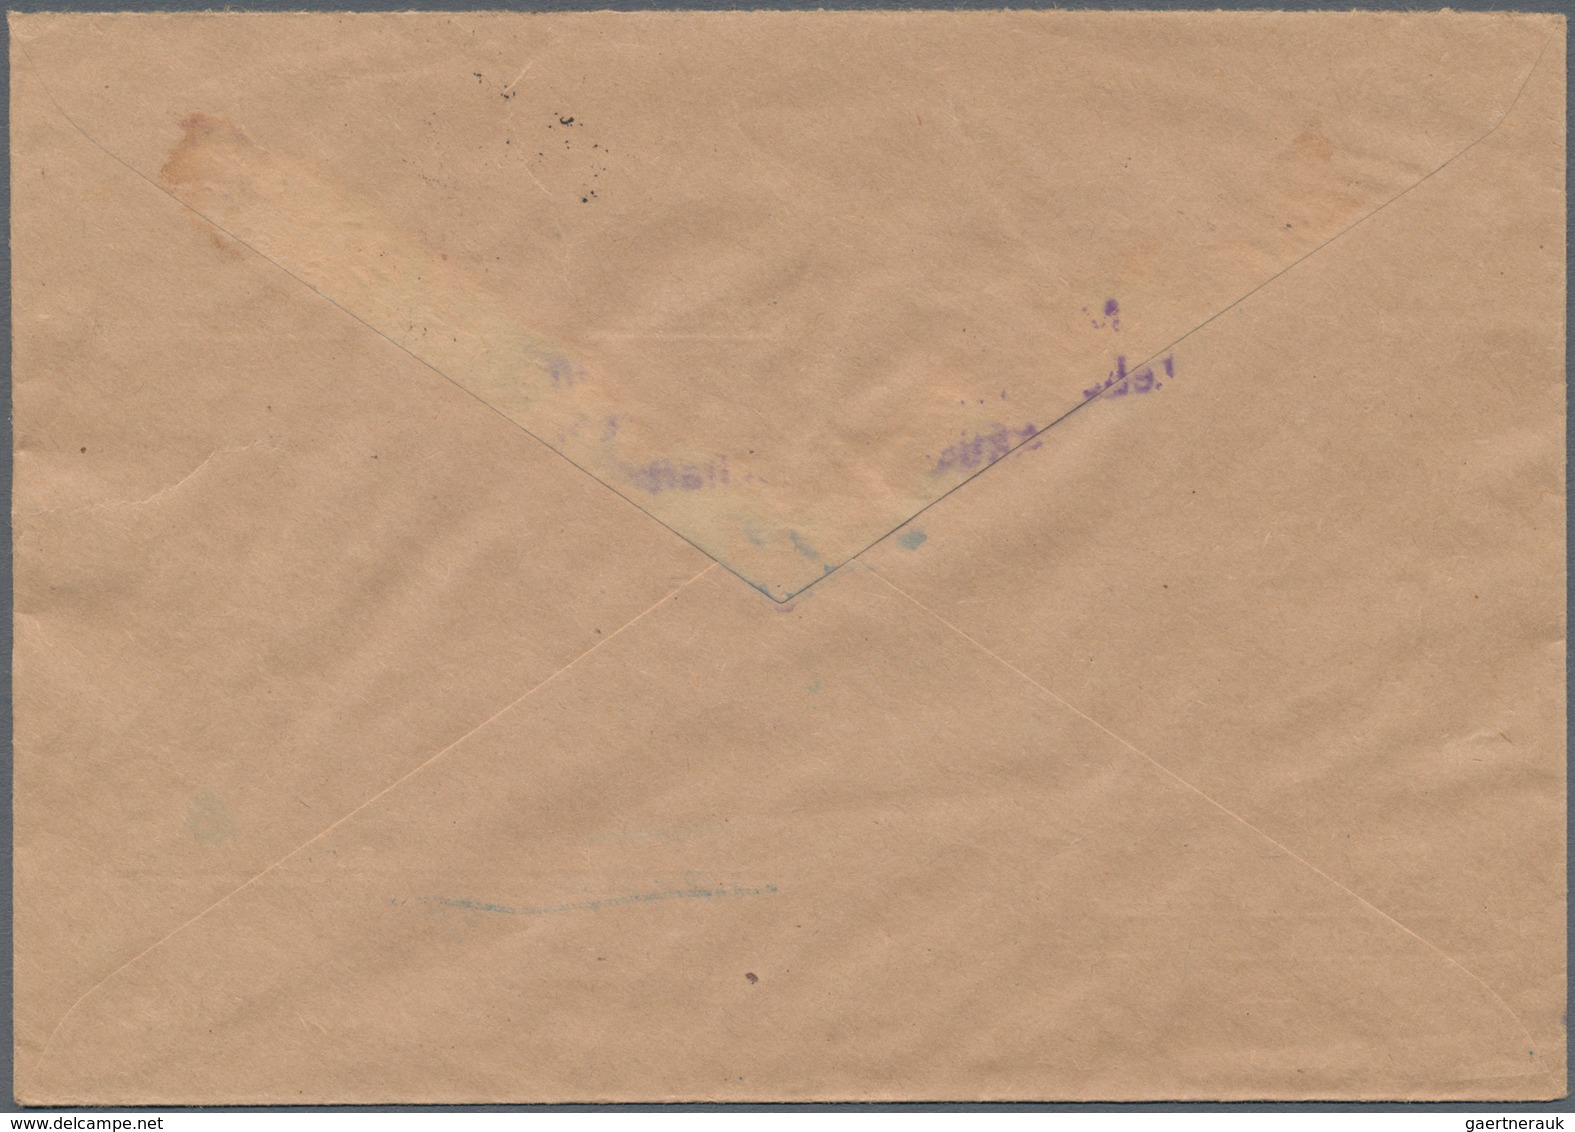 Berlin: 1948, Drei Bedarfsbriefe Mit Teils Mischfrankaturen U.a. Schwarzaufdruck 16 Pf. + 60 Pf. Sow - Usati